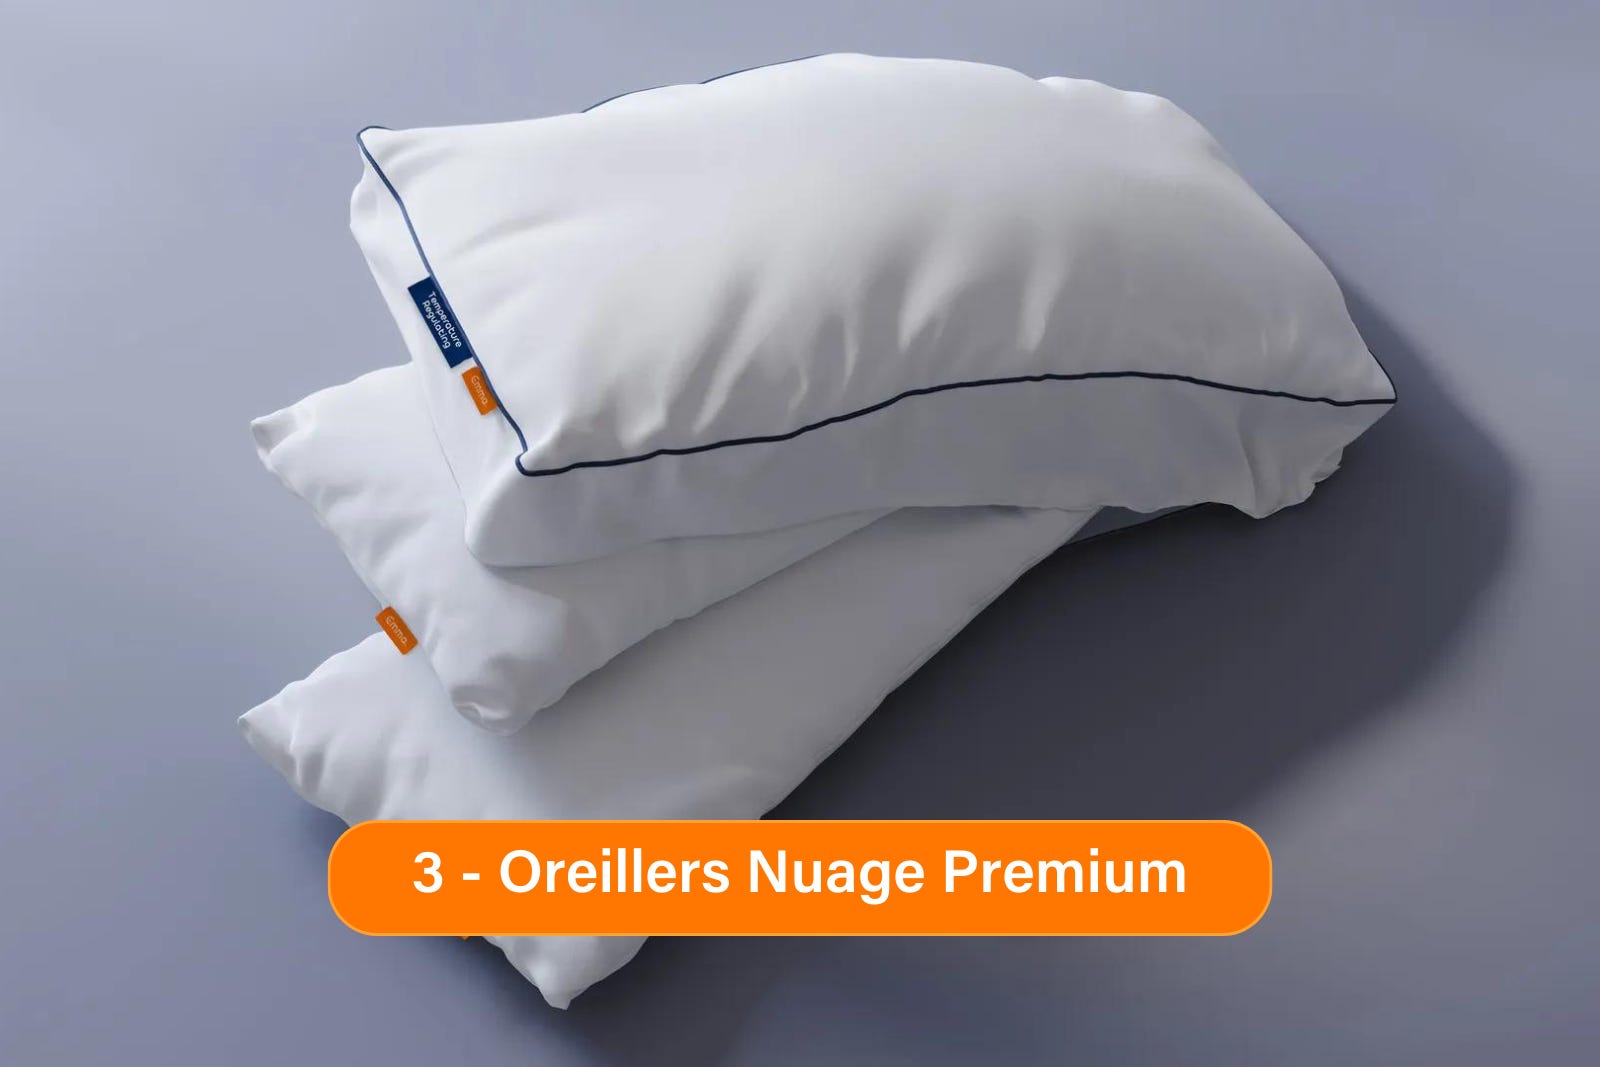 Oreillers Nuage Premium Bundle Presentation.png